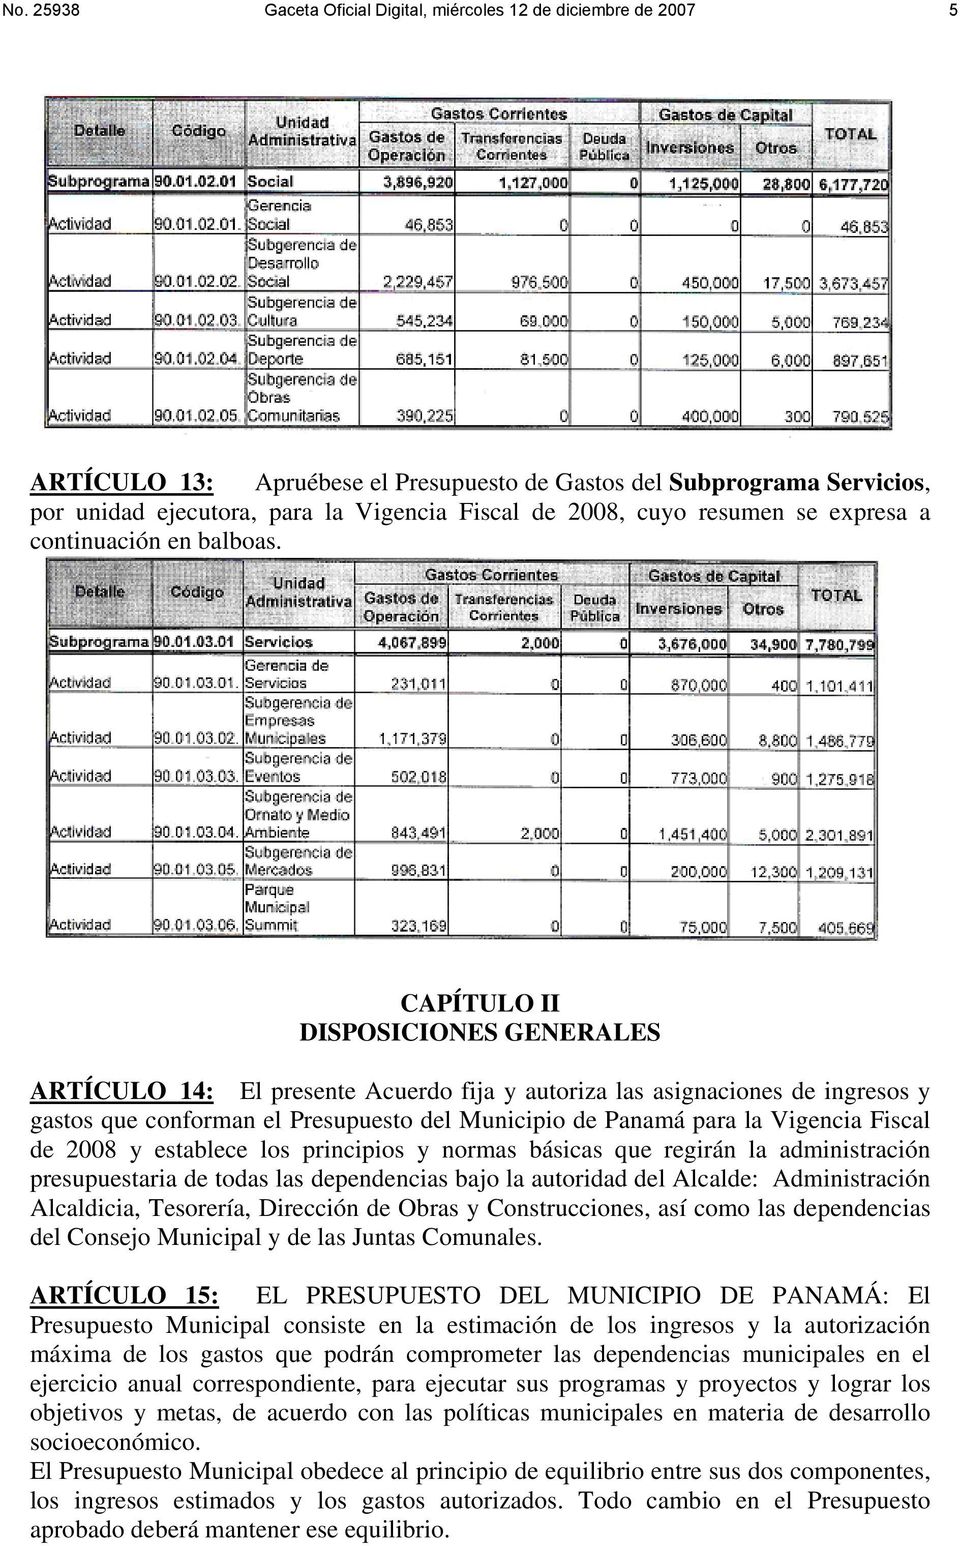 CAPÍTULO II DISPOSICIONES GENERALES ARTÍCULO 14: El presente Acuerdo fija y autoriza las asignaciones de ingresos y gastos que conforman el Presupuesto del Municipio de Panamá para la Vigencia Fiscal